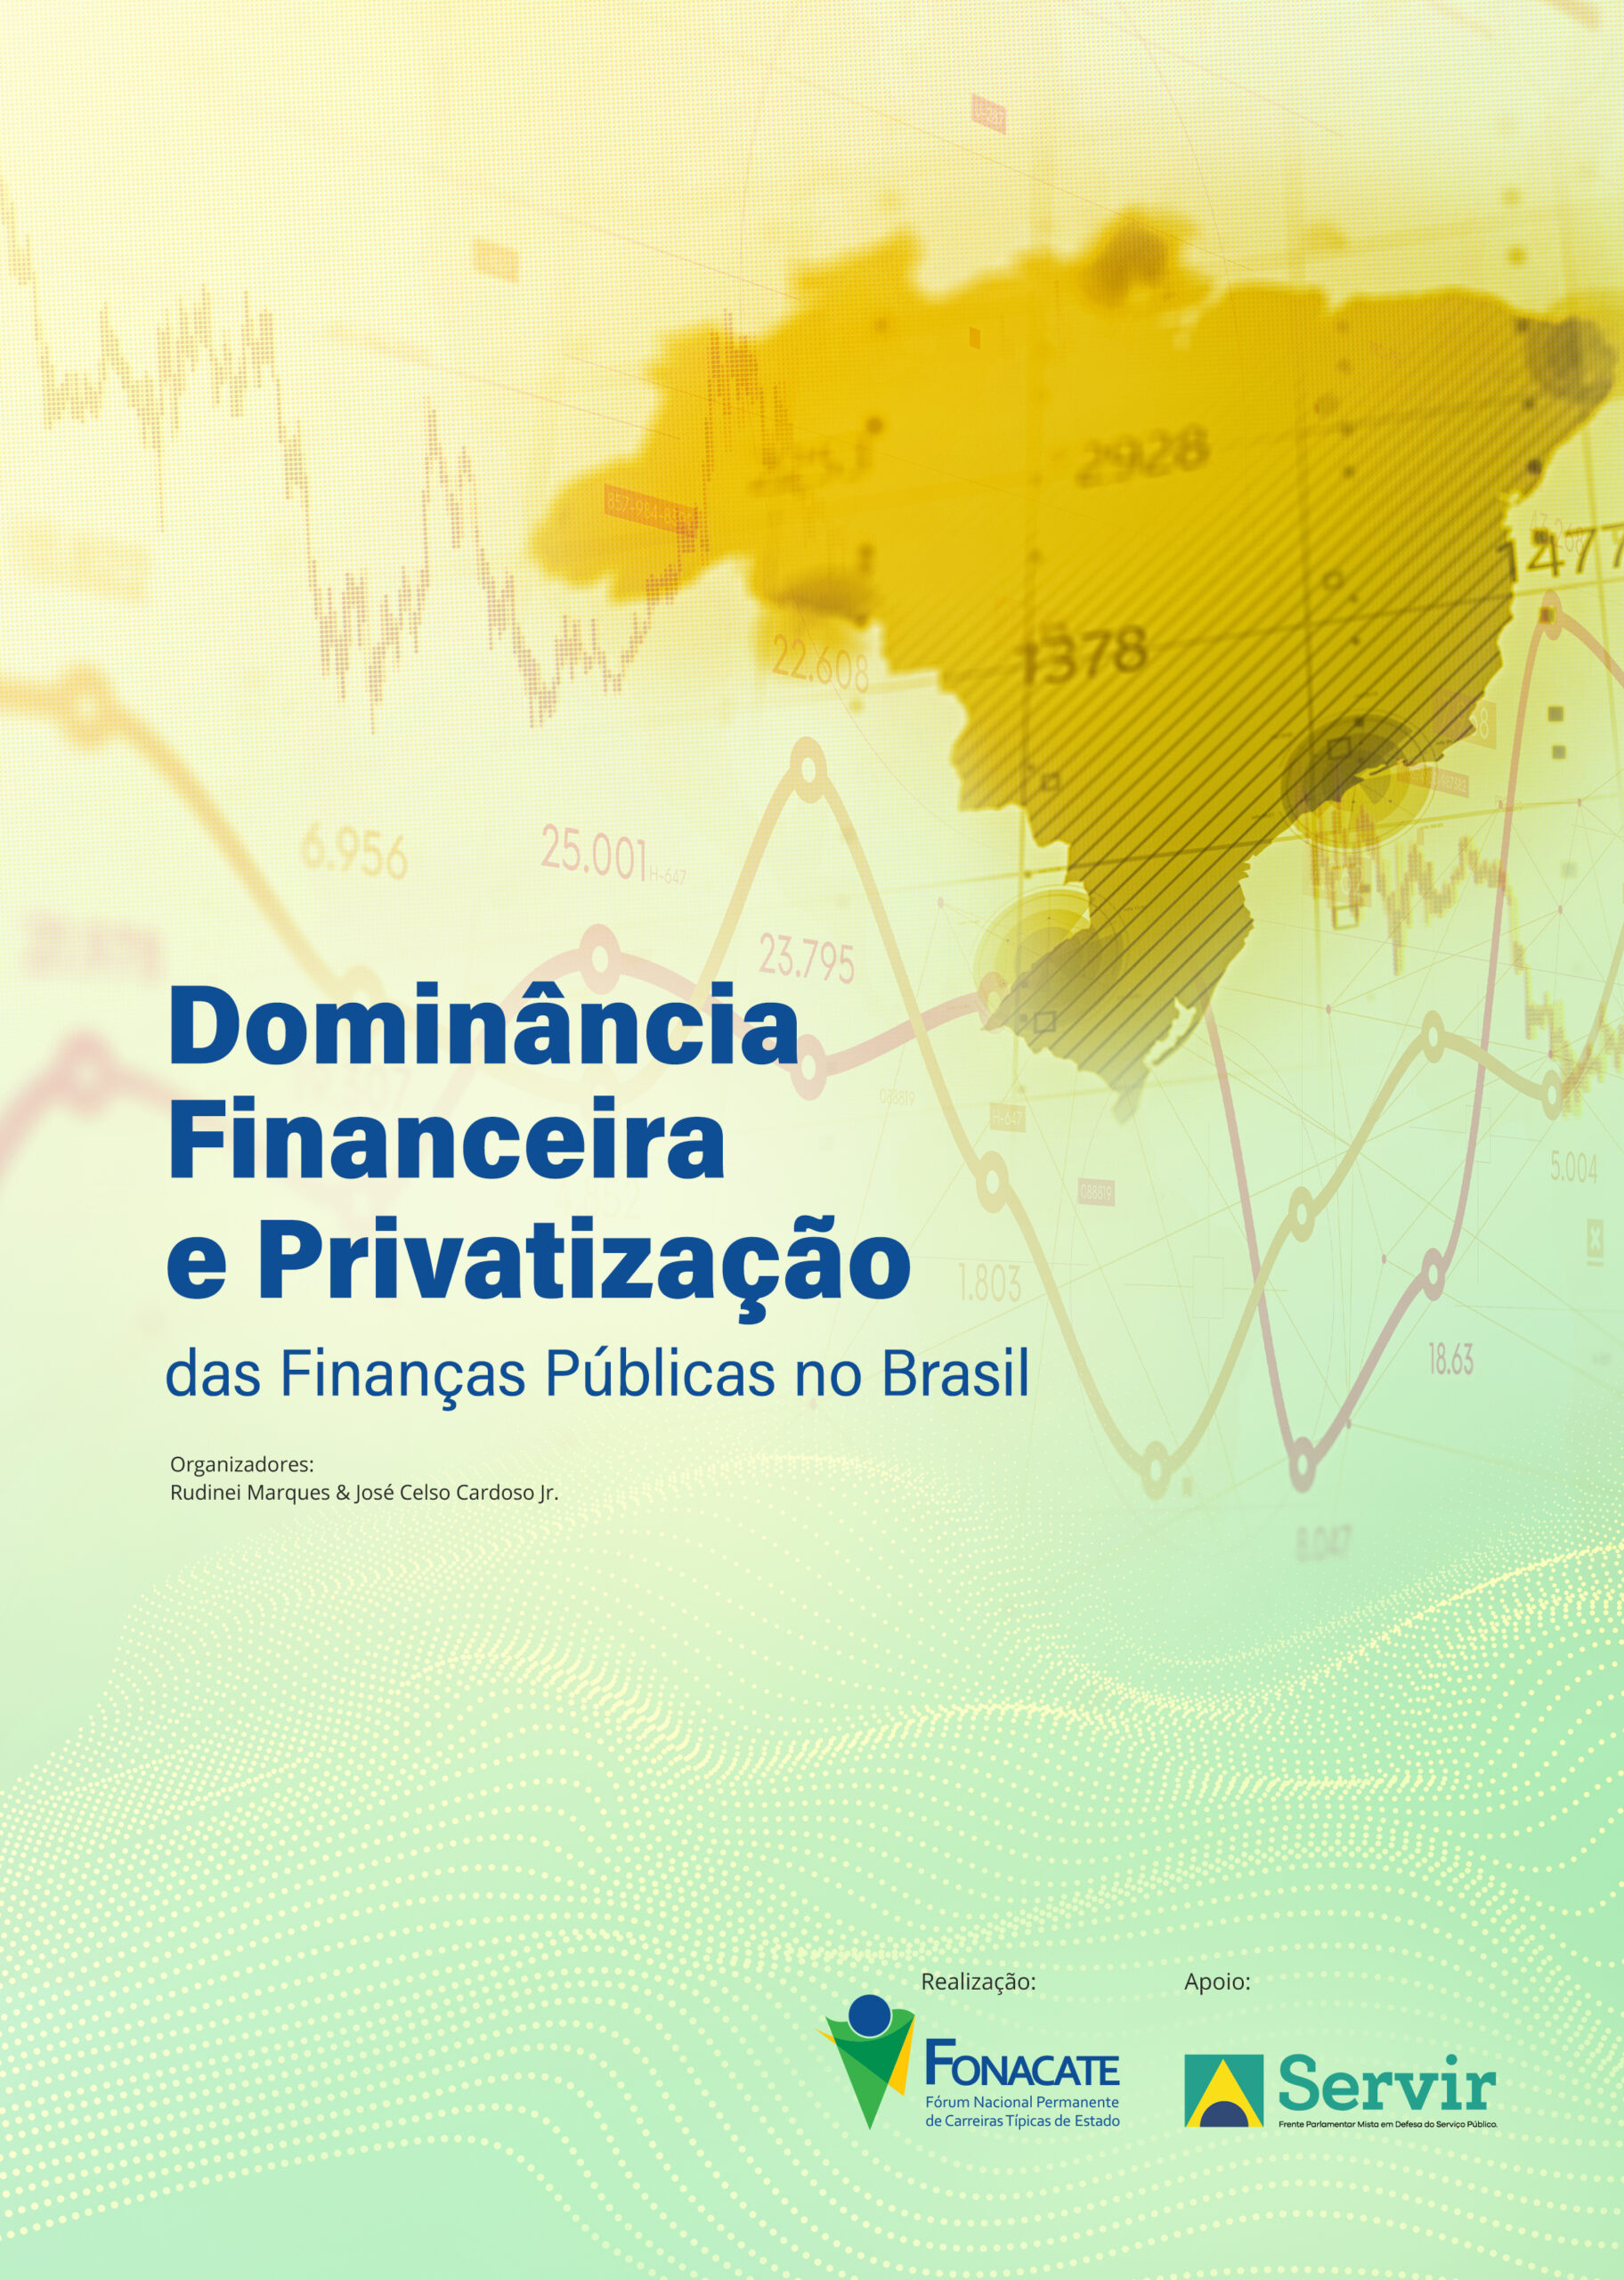 Dominância Financeira e Privatização das Finanças Públicas no Brasil